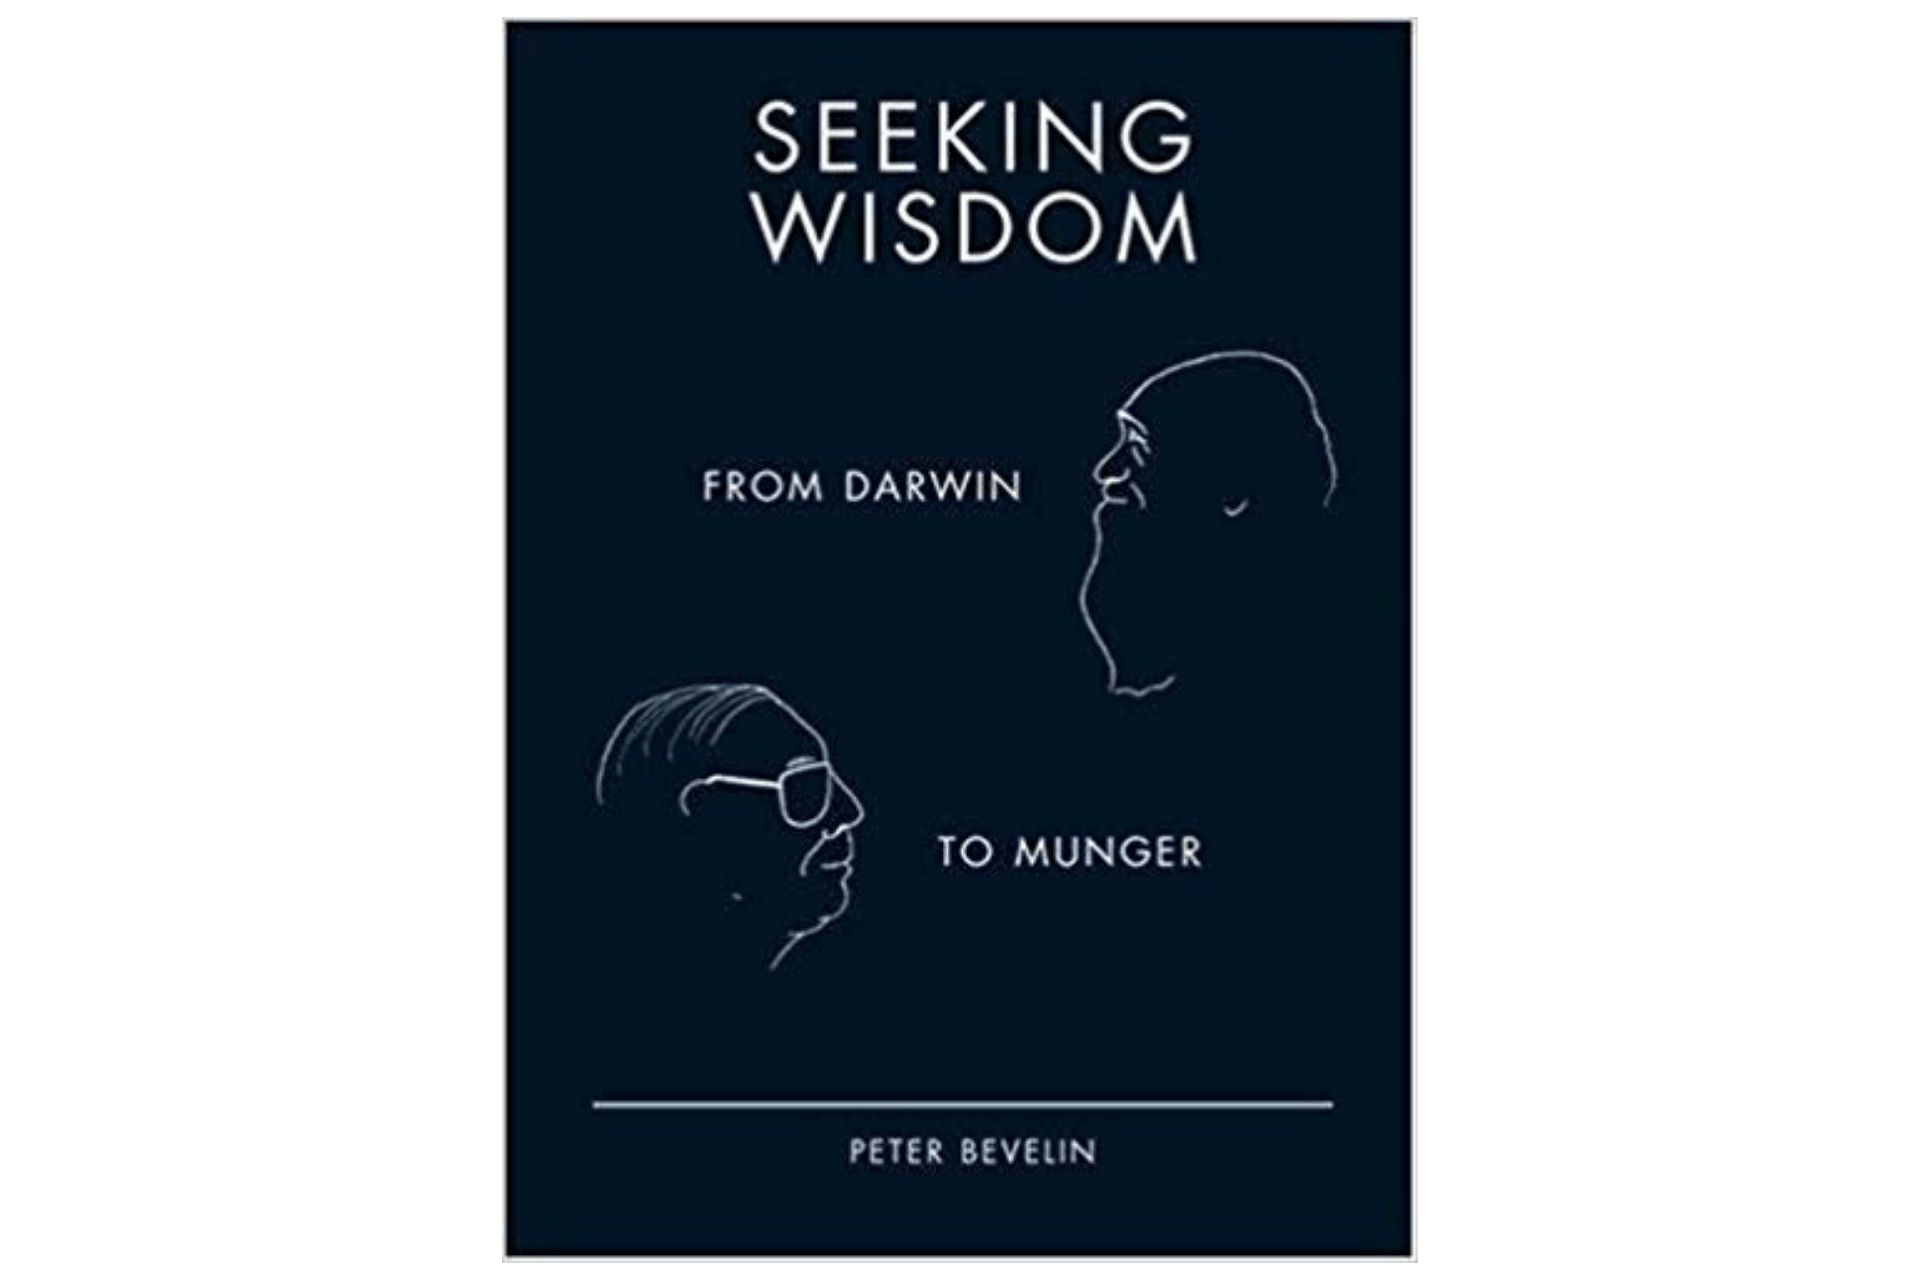 Seeking Wisdom by Peter Bevelin